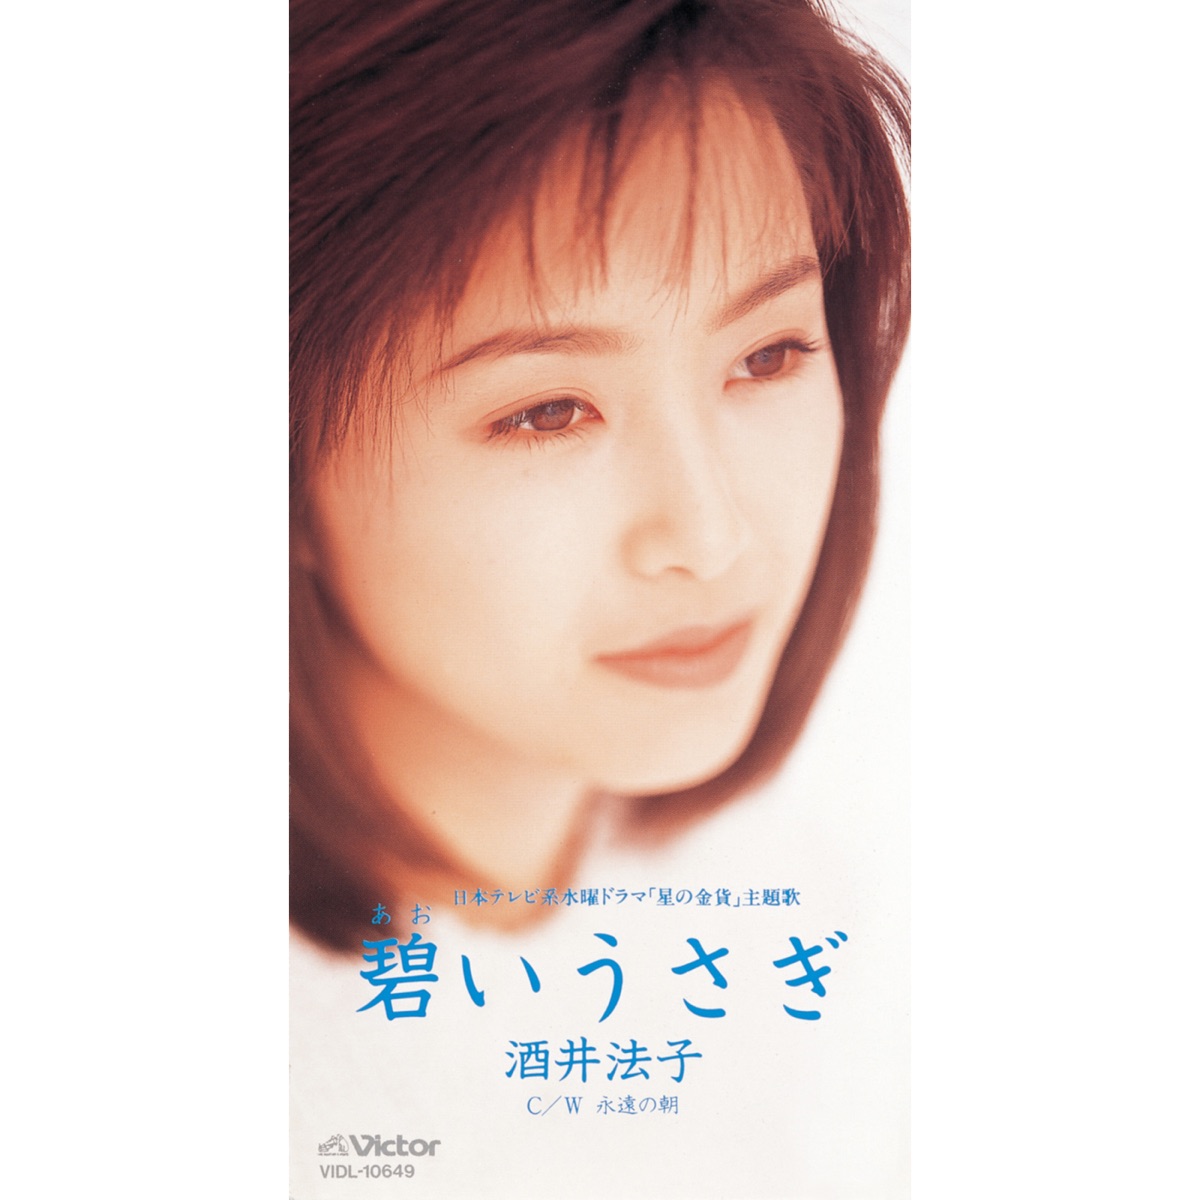 酒井法子 - 碧いうさぎ - EP (1995) [iTunes Plus AAC M4A]-新房子